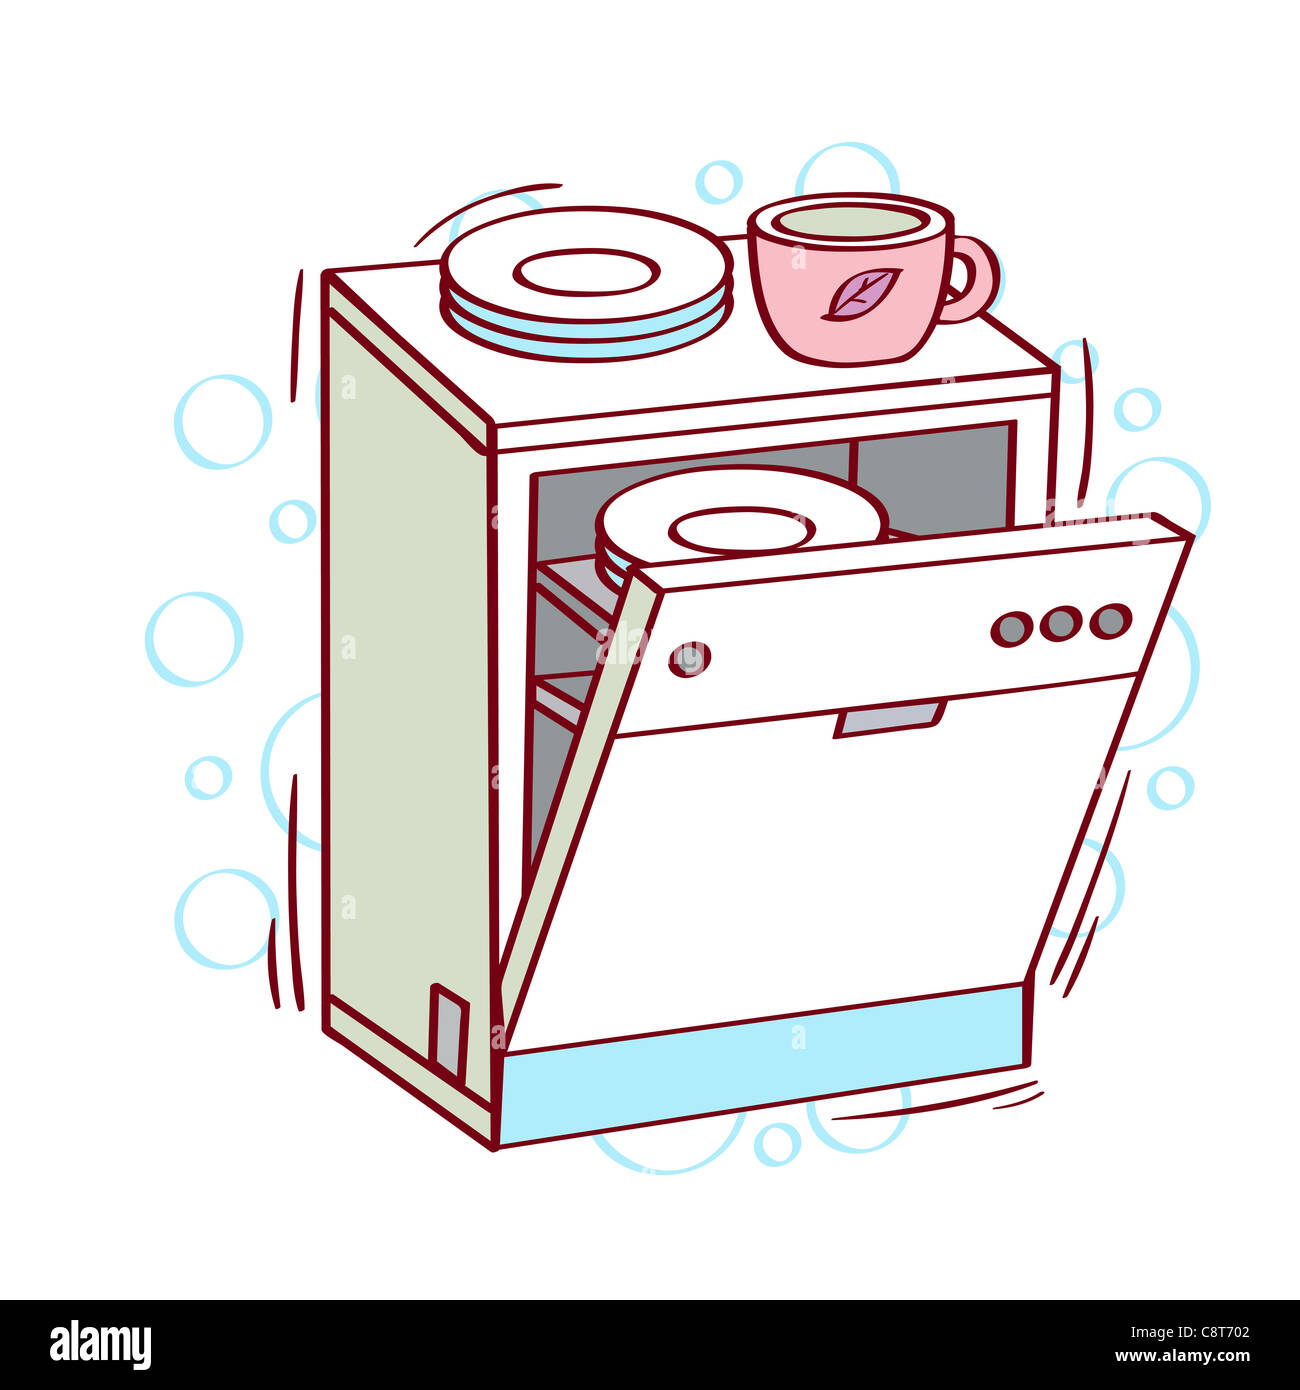 Illustration of dishwasher Stock Photo - Alamy